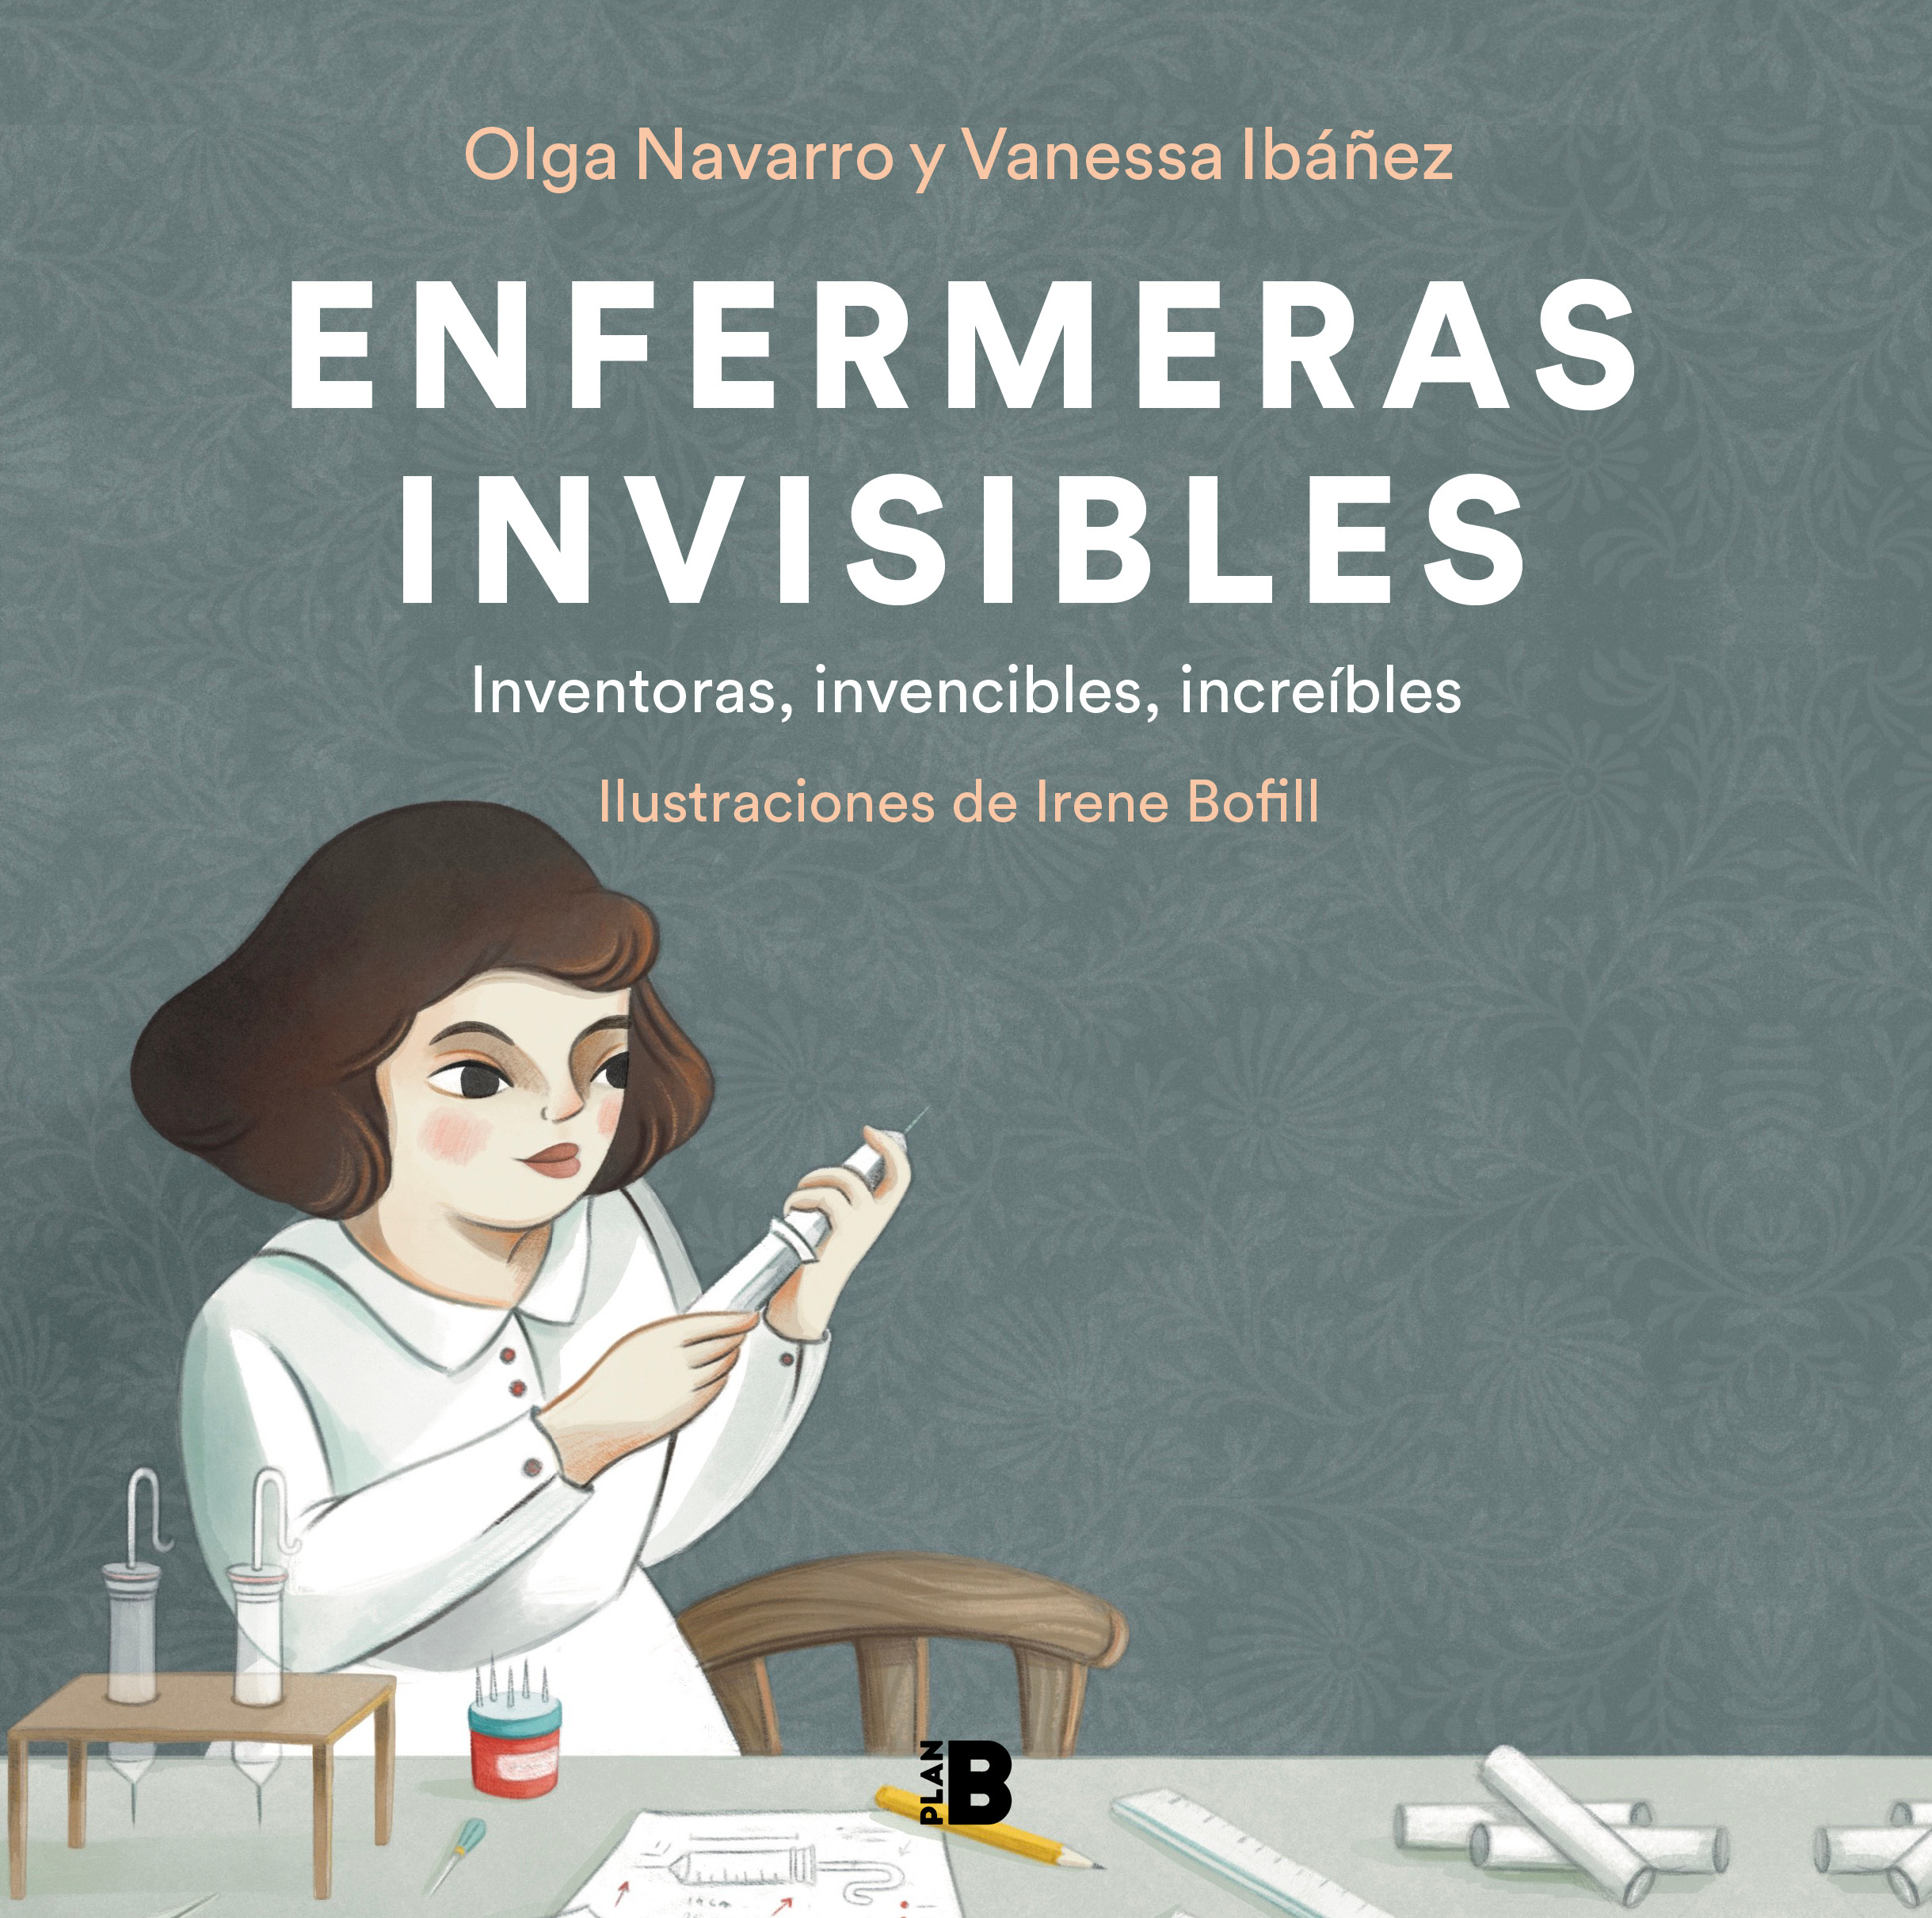 Enfermeras invisibles "Inventoras, invencibles, increíbles"